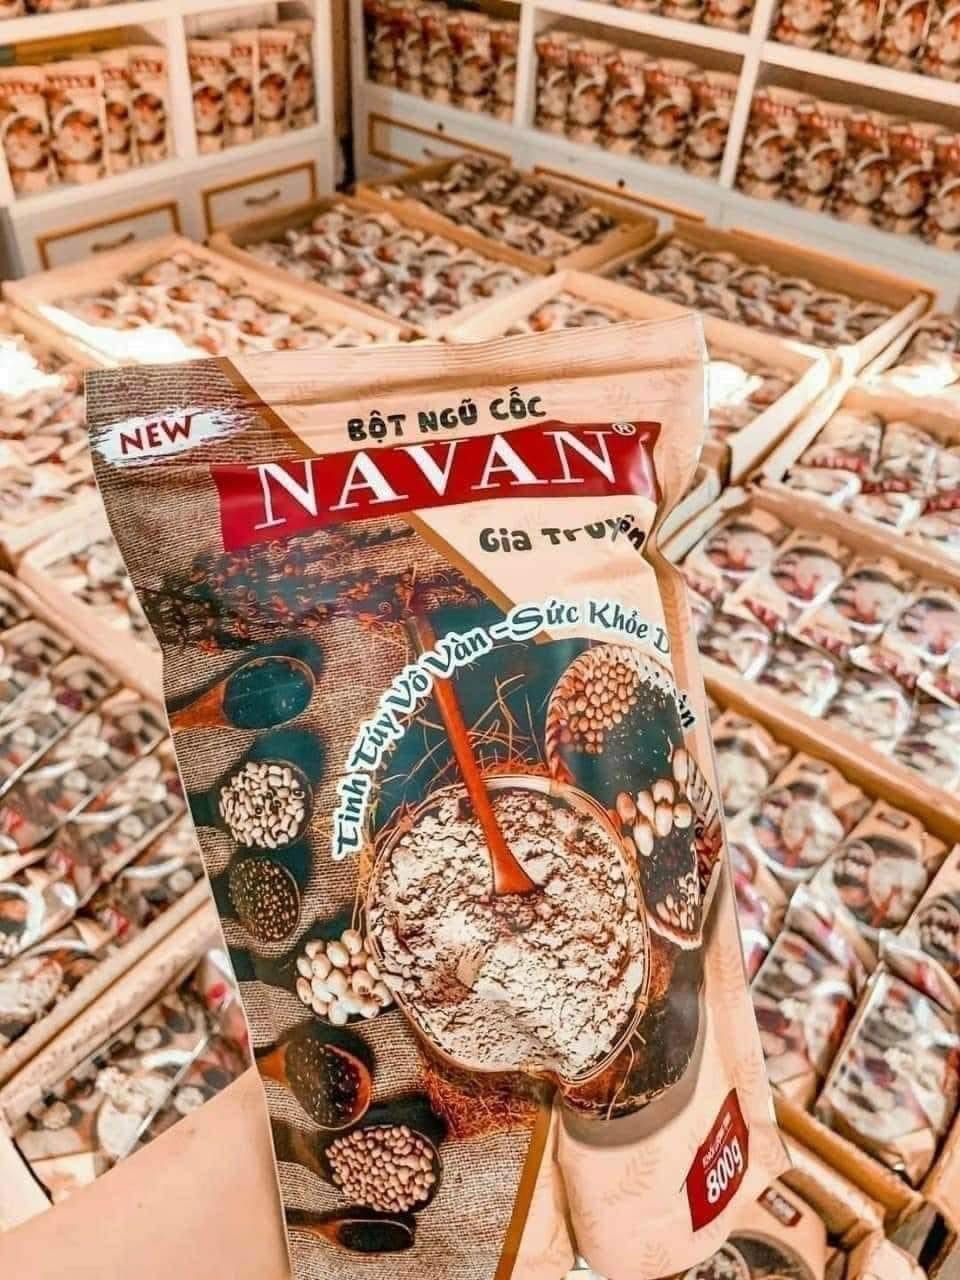 Ngũ cốc Navan thực phẩm vàng trong làng dinh dưỡng không thể bỏ lỡ